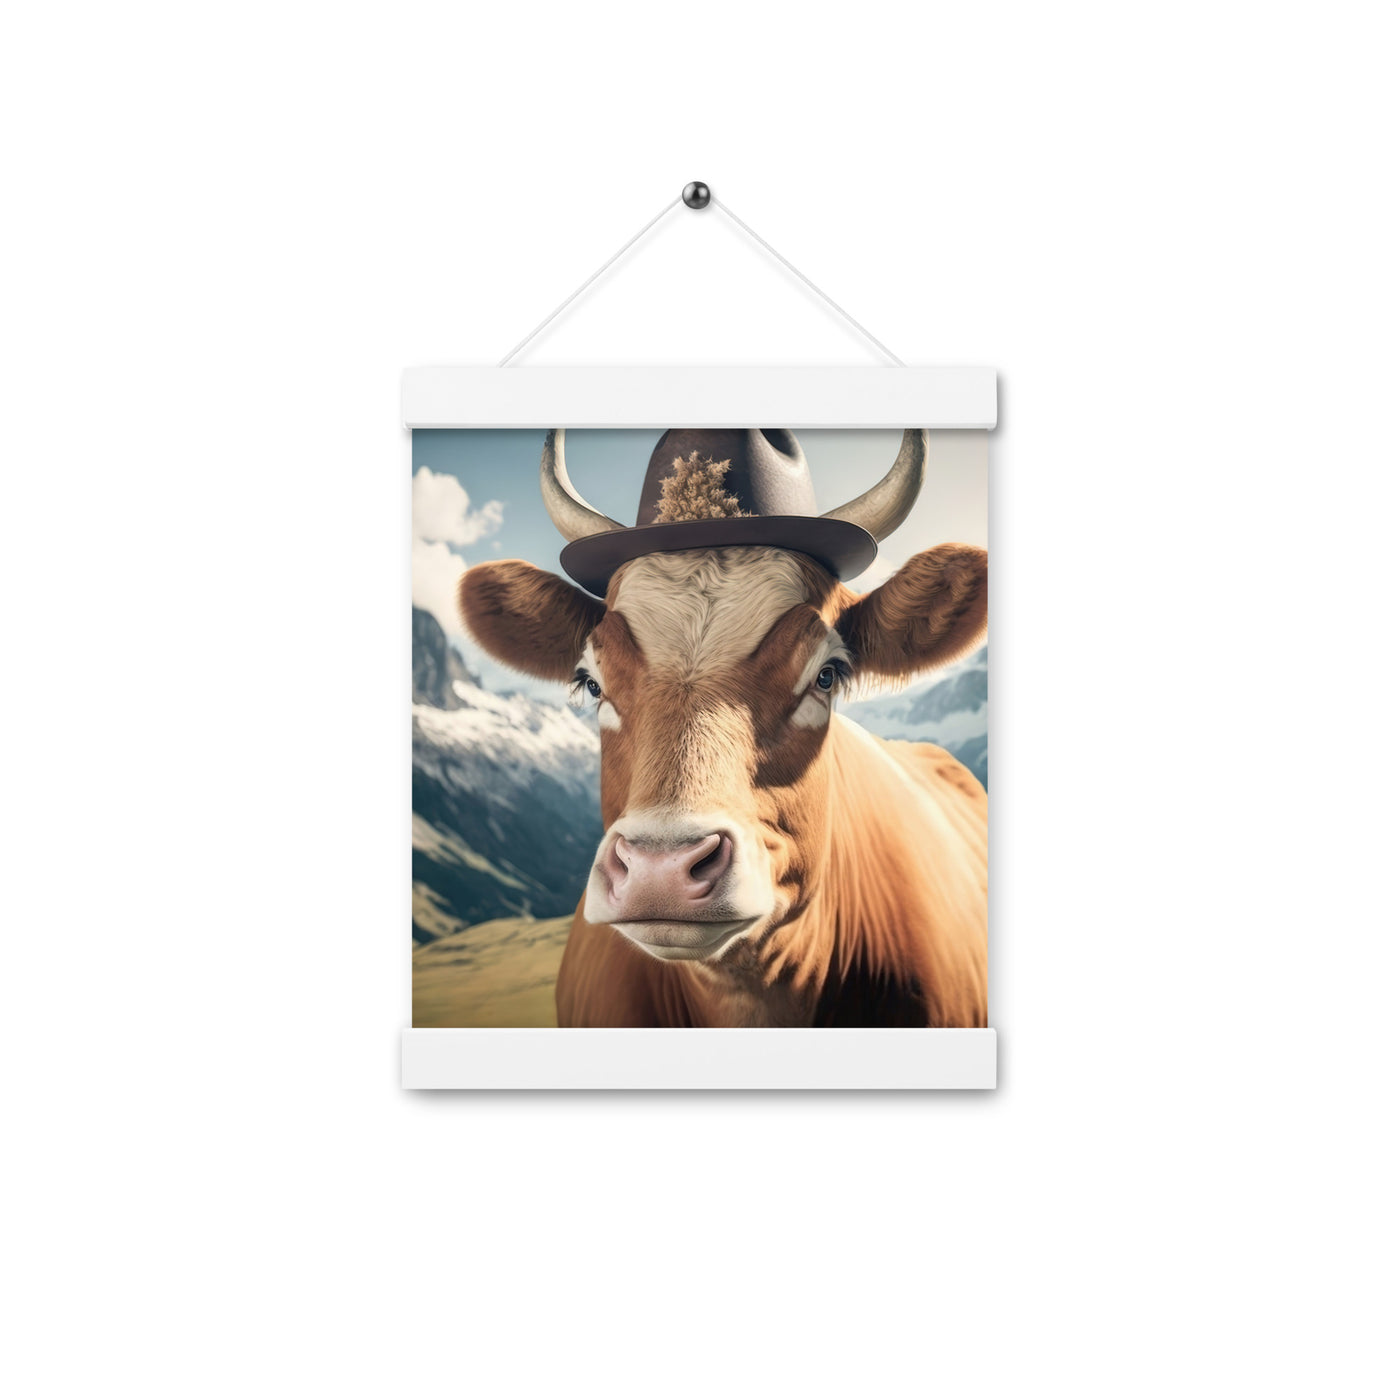 Kuh mit Hut in den Alpen - Berge im Hintergrund - Landschaftsmalerei - Premium Poster mit Aufhängung berge xxx Weiß 20.3 x 25.4 cm